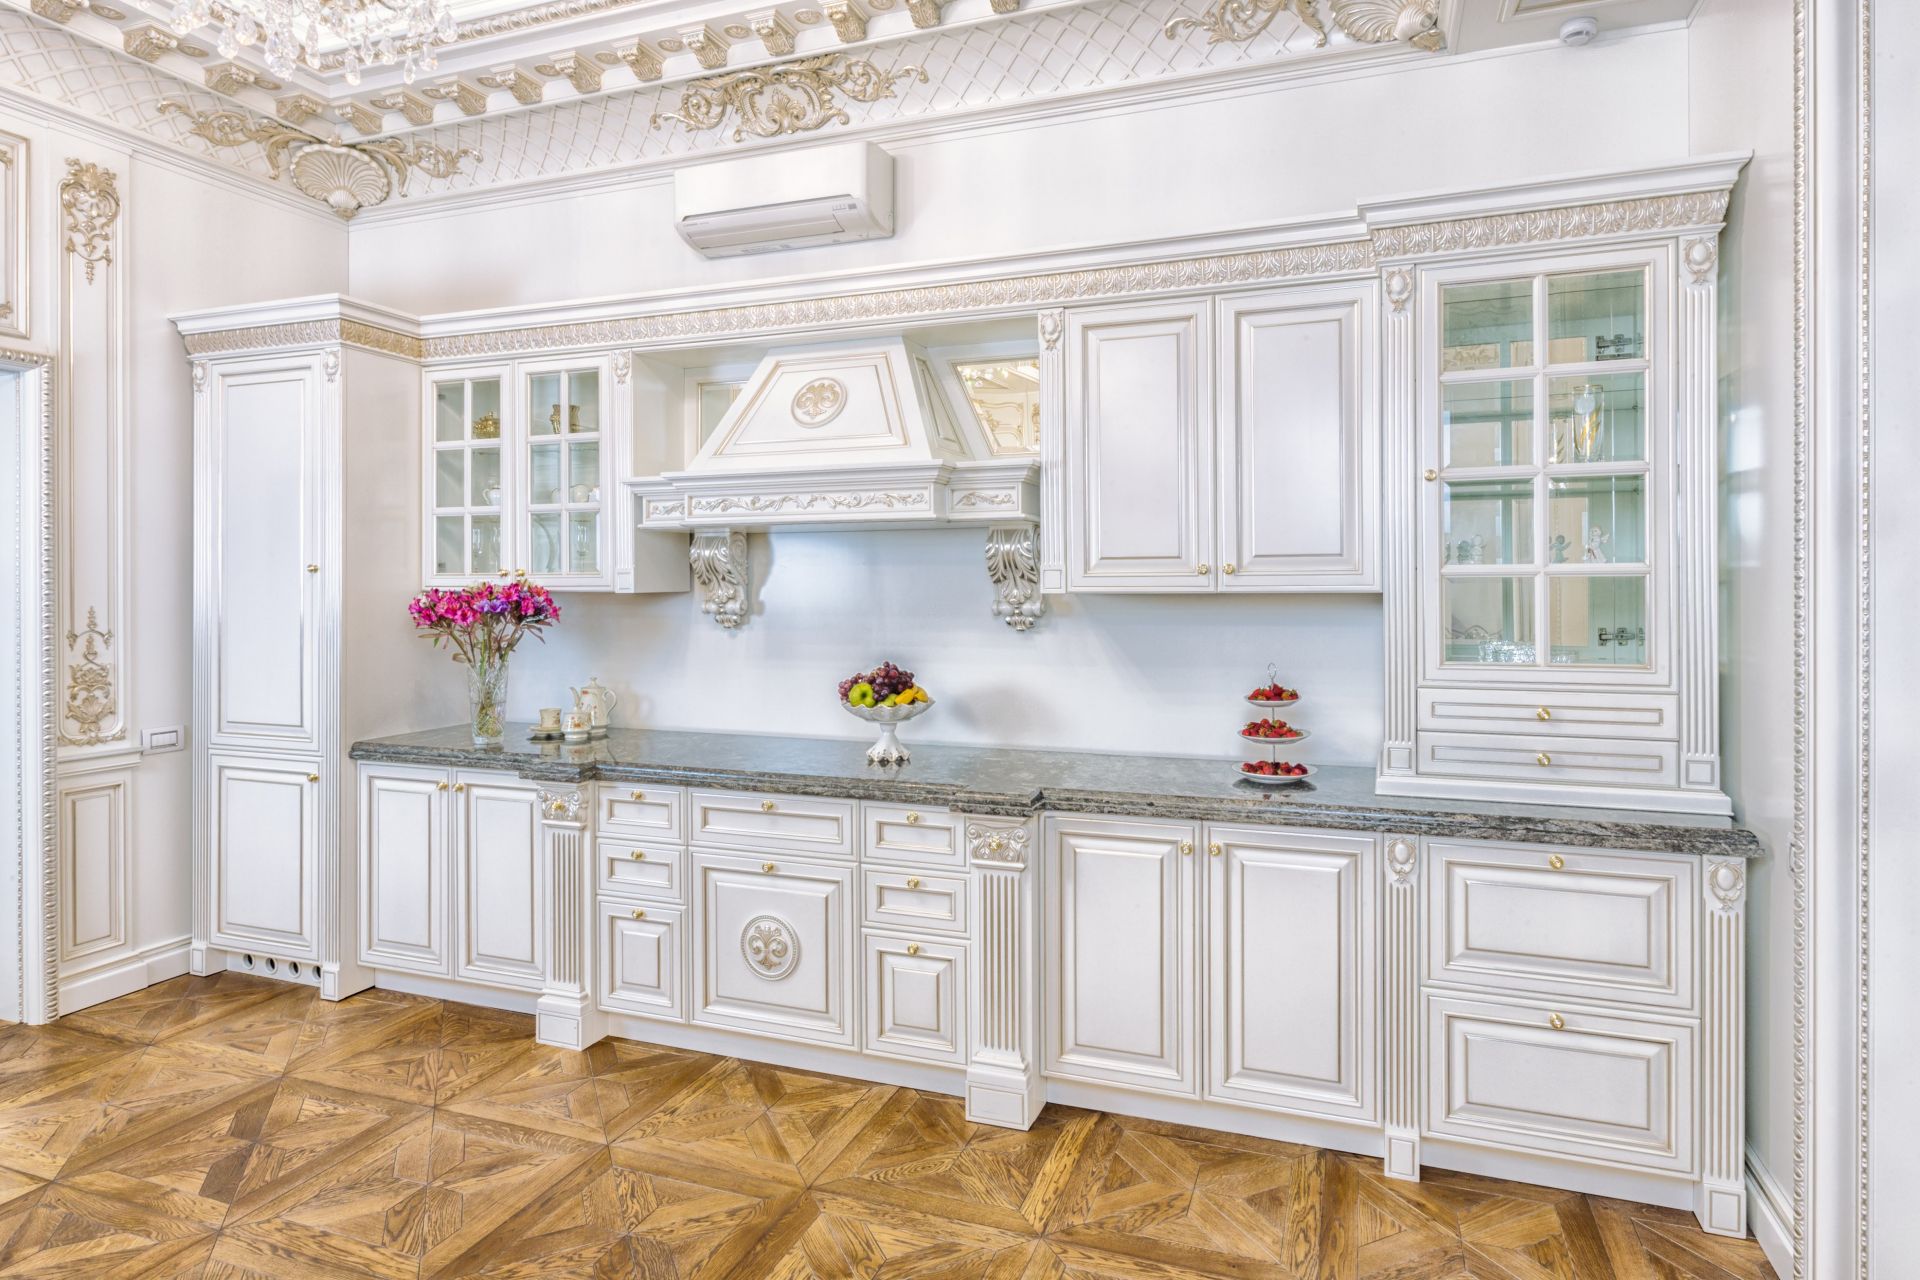 Wooden kitchen in white tones